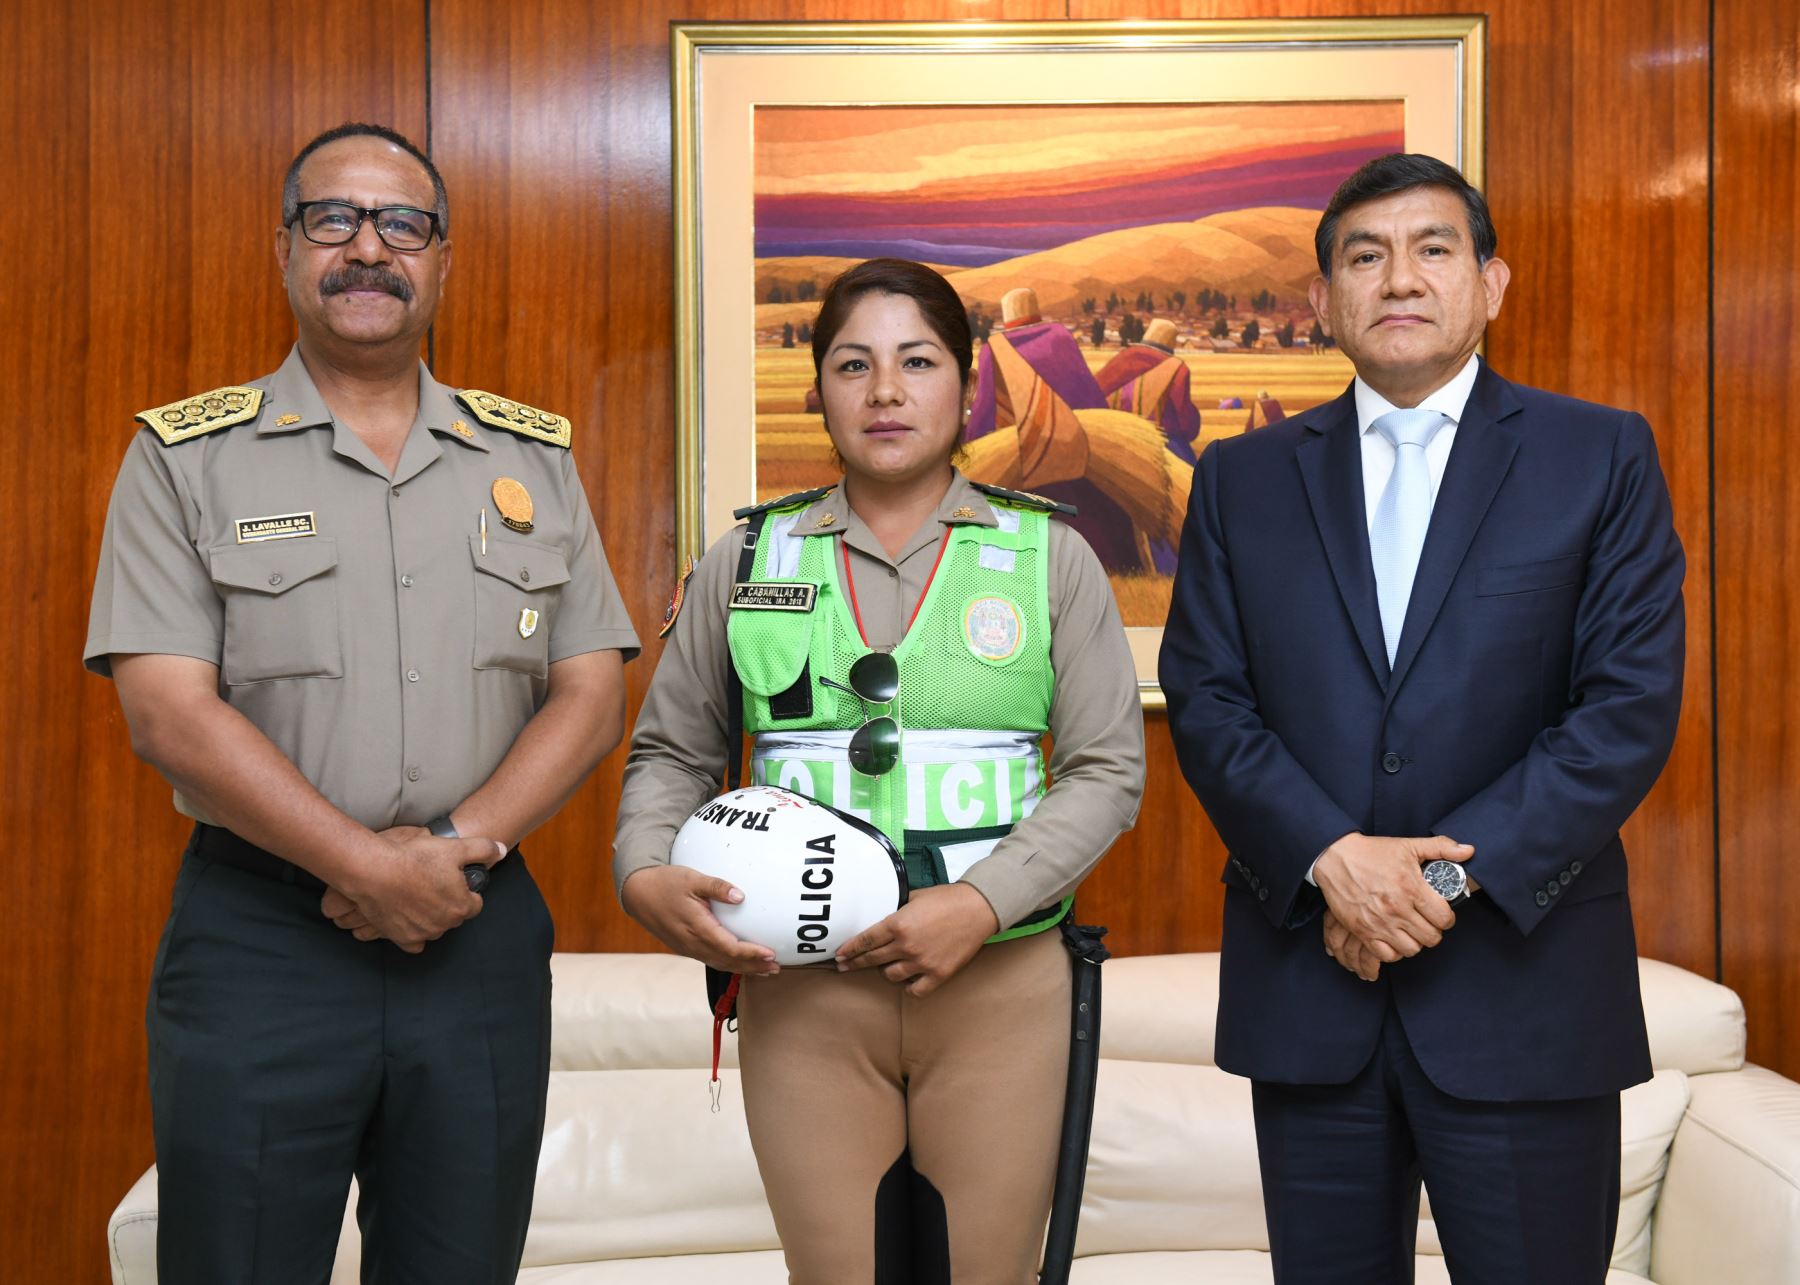 El ministro del Interior, Carlos Morán, felicitó hoy de manera personal el coraje y valentía de la suboficial de la Policía Nacional del Perú Paula Cabanillas Adauto,